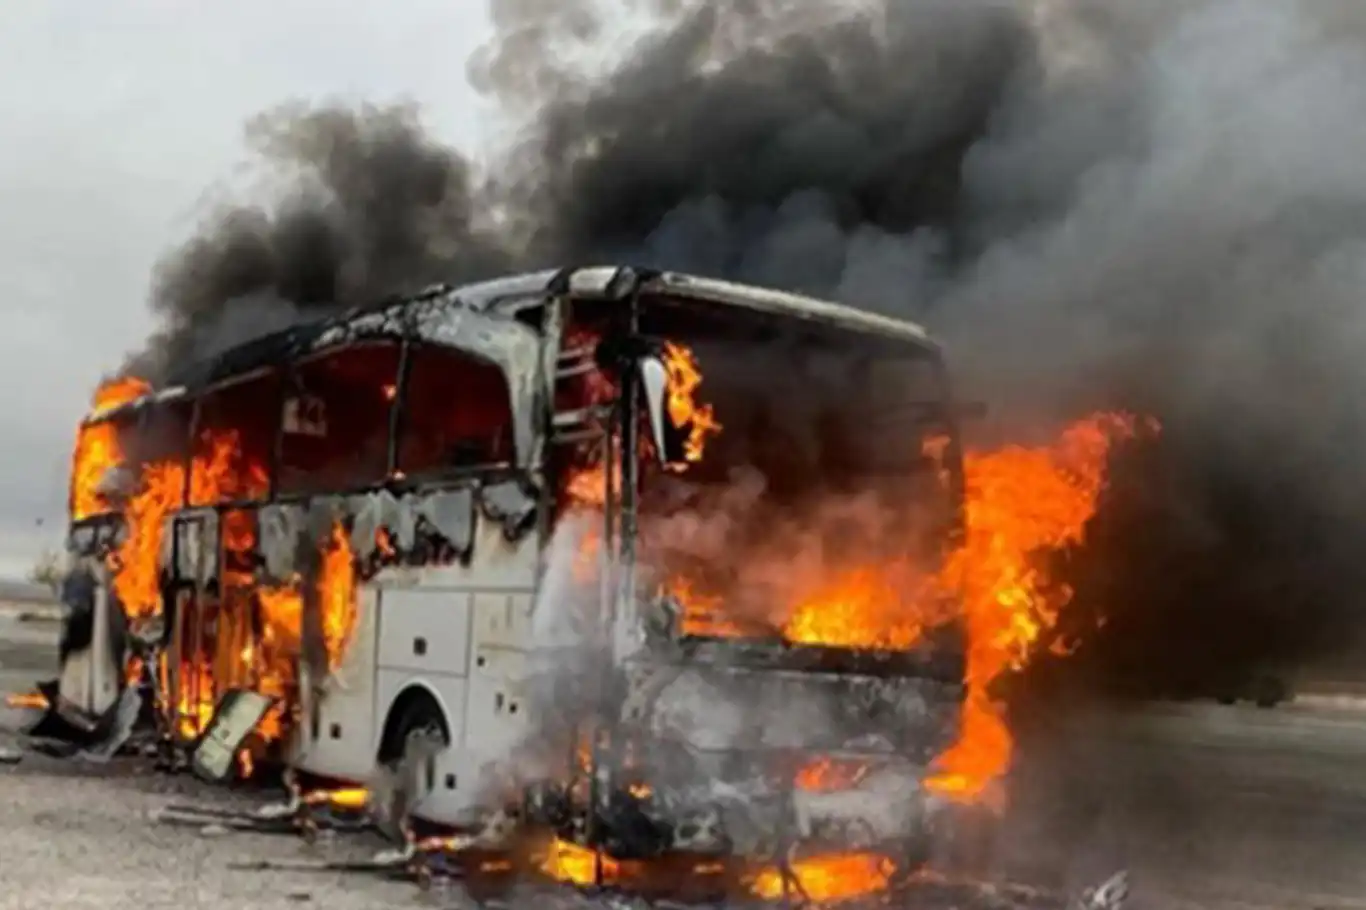 40 yolcu bulunan otobüs alev aldı